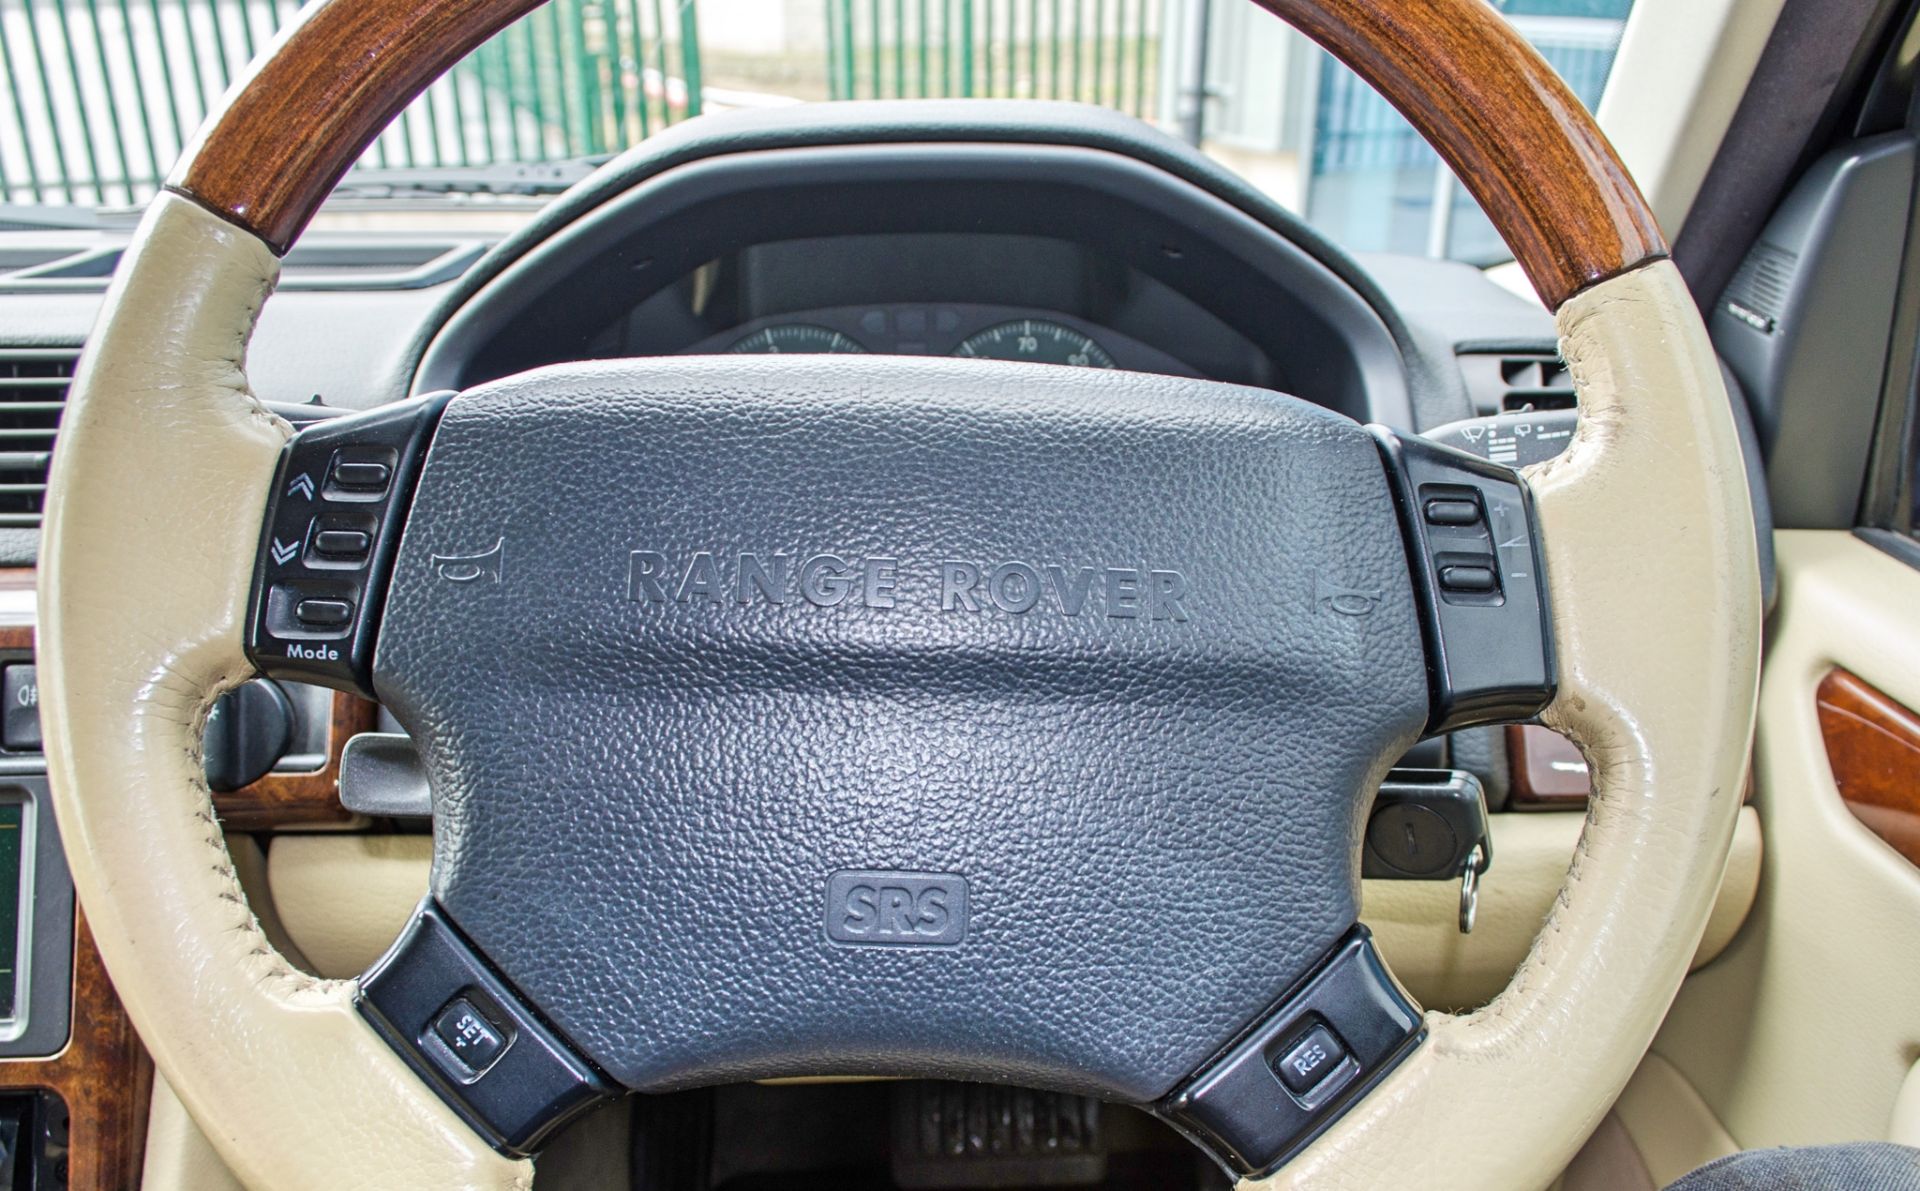 2001 Range Rover Vogue 4.6 litre V8 Auto 4 door SUV estate Registration: Y498 HNP Chassis: - Image 49 of 65